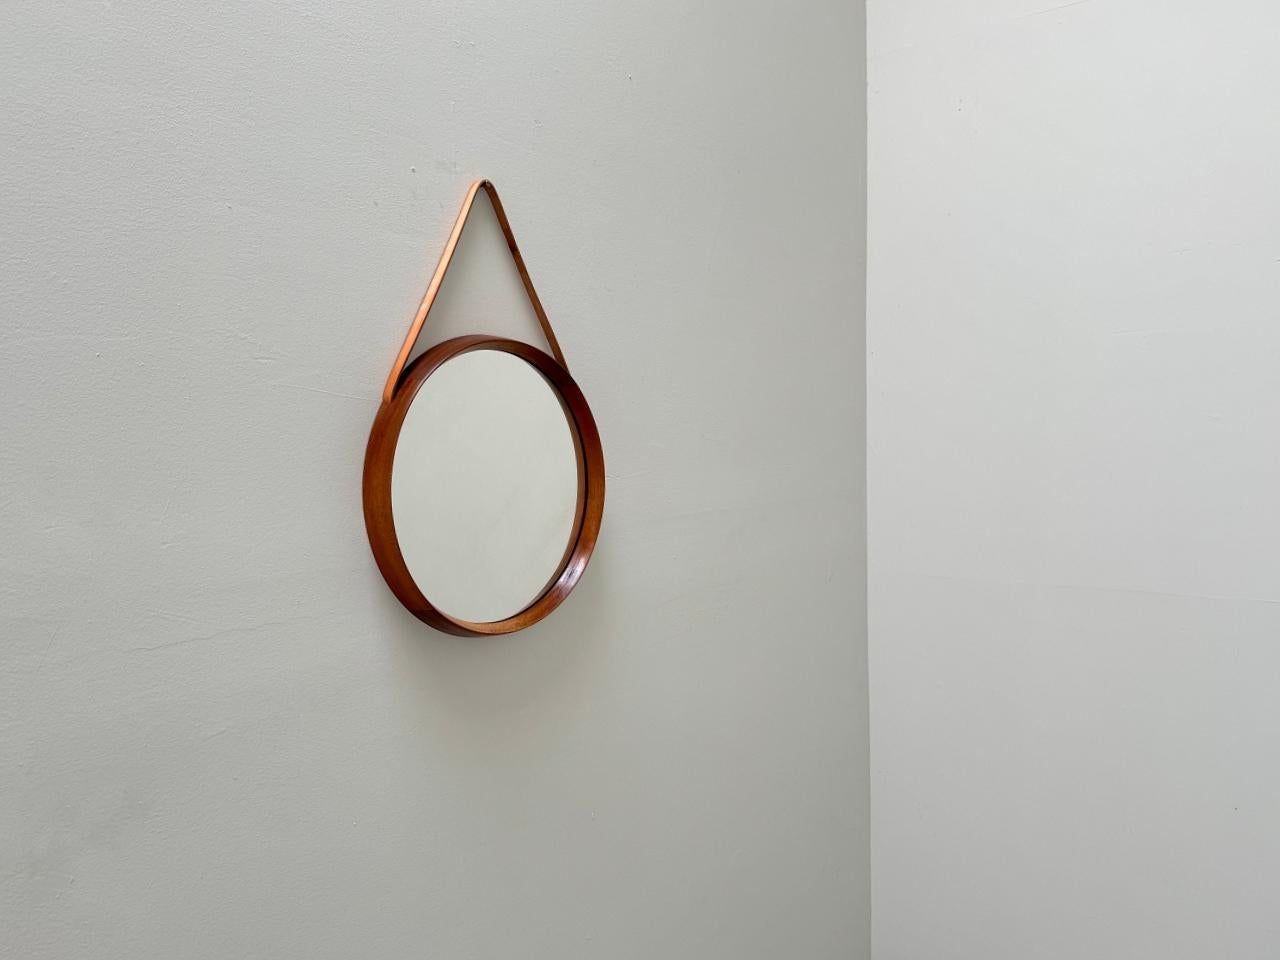 Magnifique miroir rond conçu par Uno & Östen Kristiansson pour Luxus Vittsjö Möbelfabrik dans les années 1960, Suède. Cadre massif en bois de teck avec sangle de suspension décorative en cuir intégrée. Le miroir est en très bon état. Le miroir est